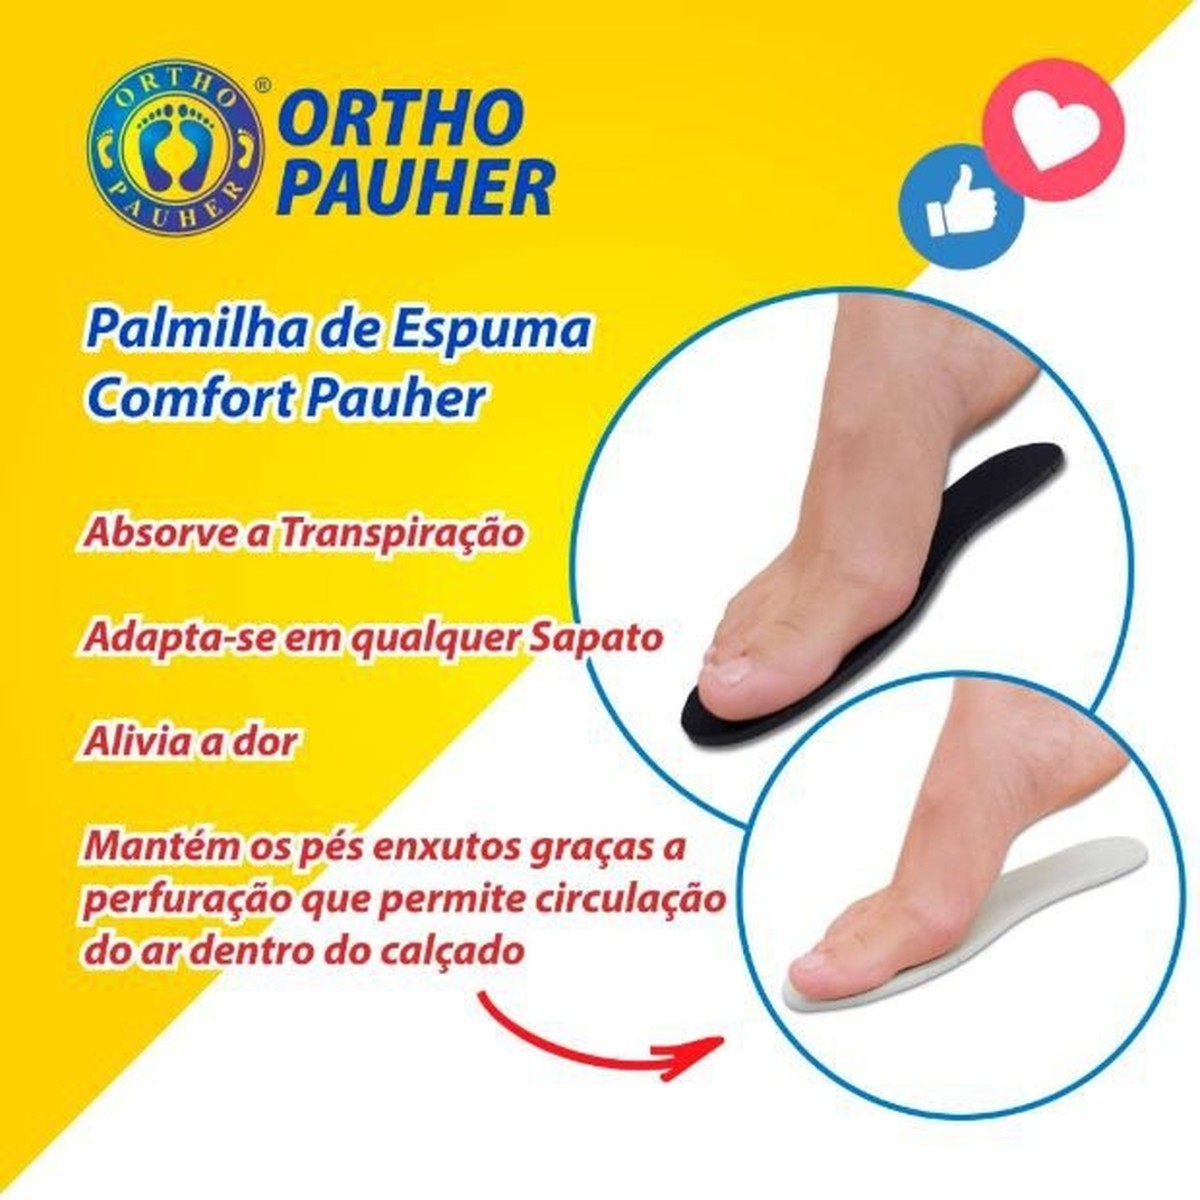 Foto do produto Palmilha de Espuma Confort Pauher Ref: AC-060 OrthoPauher